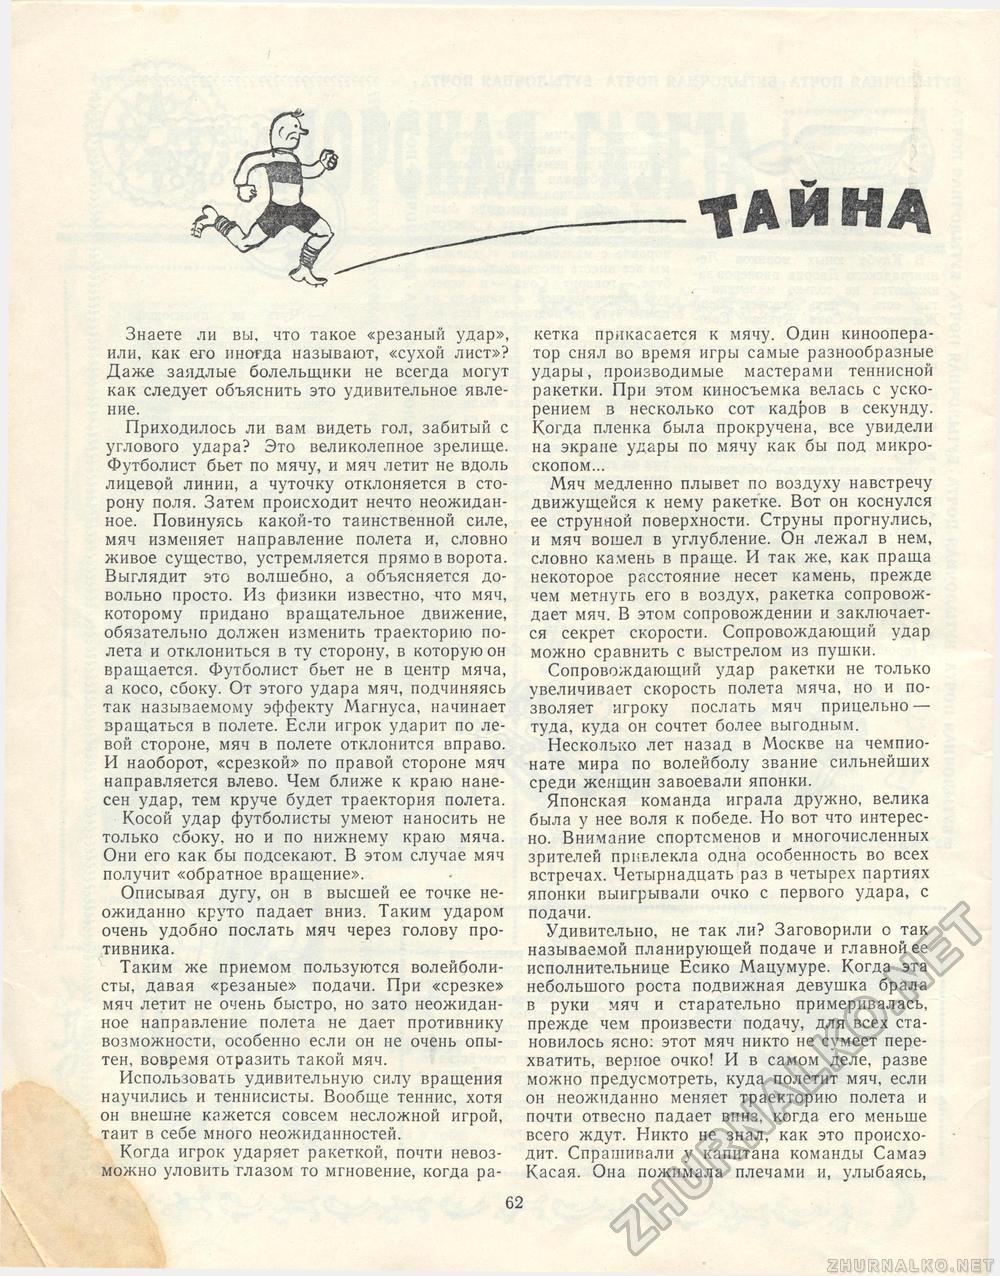  1968-03,  68